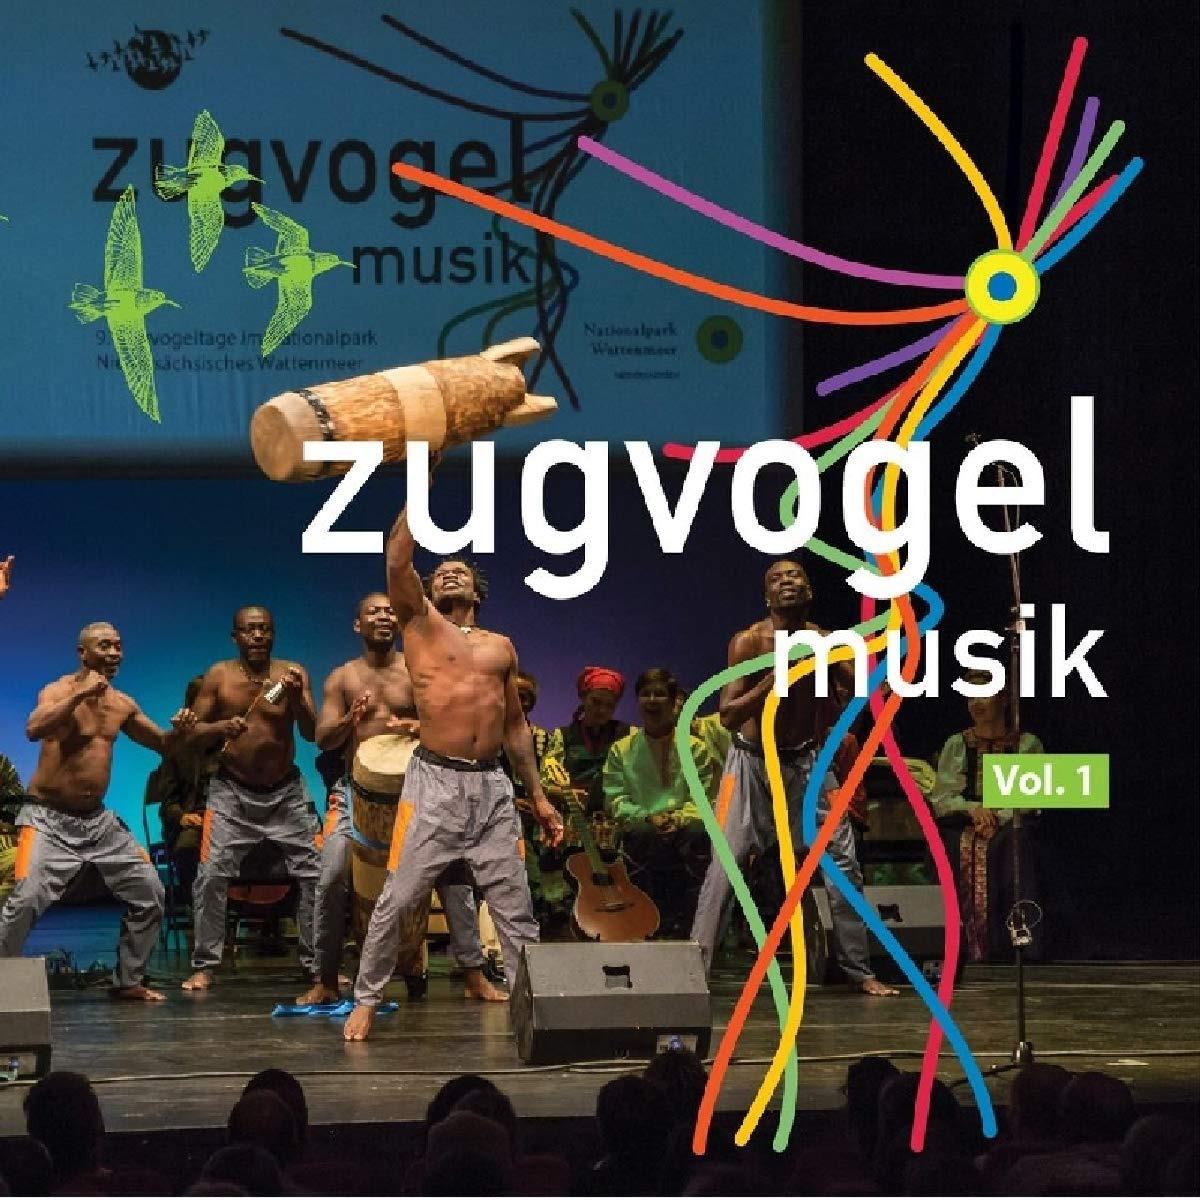 VA - Zugvogelmusik Vol.1